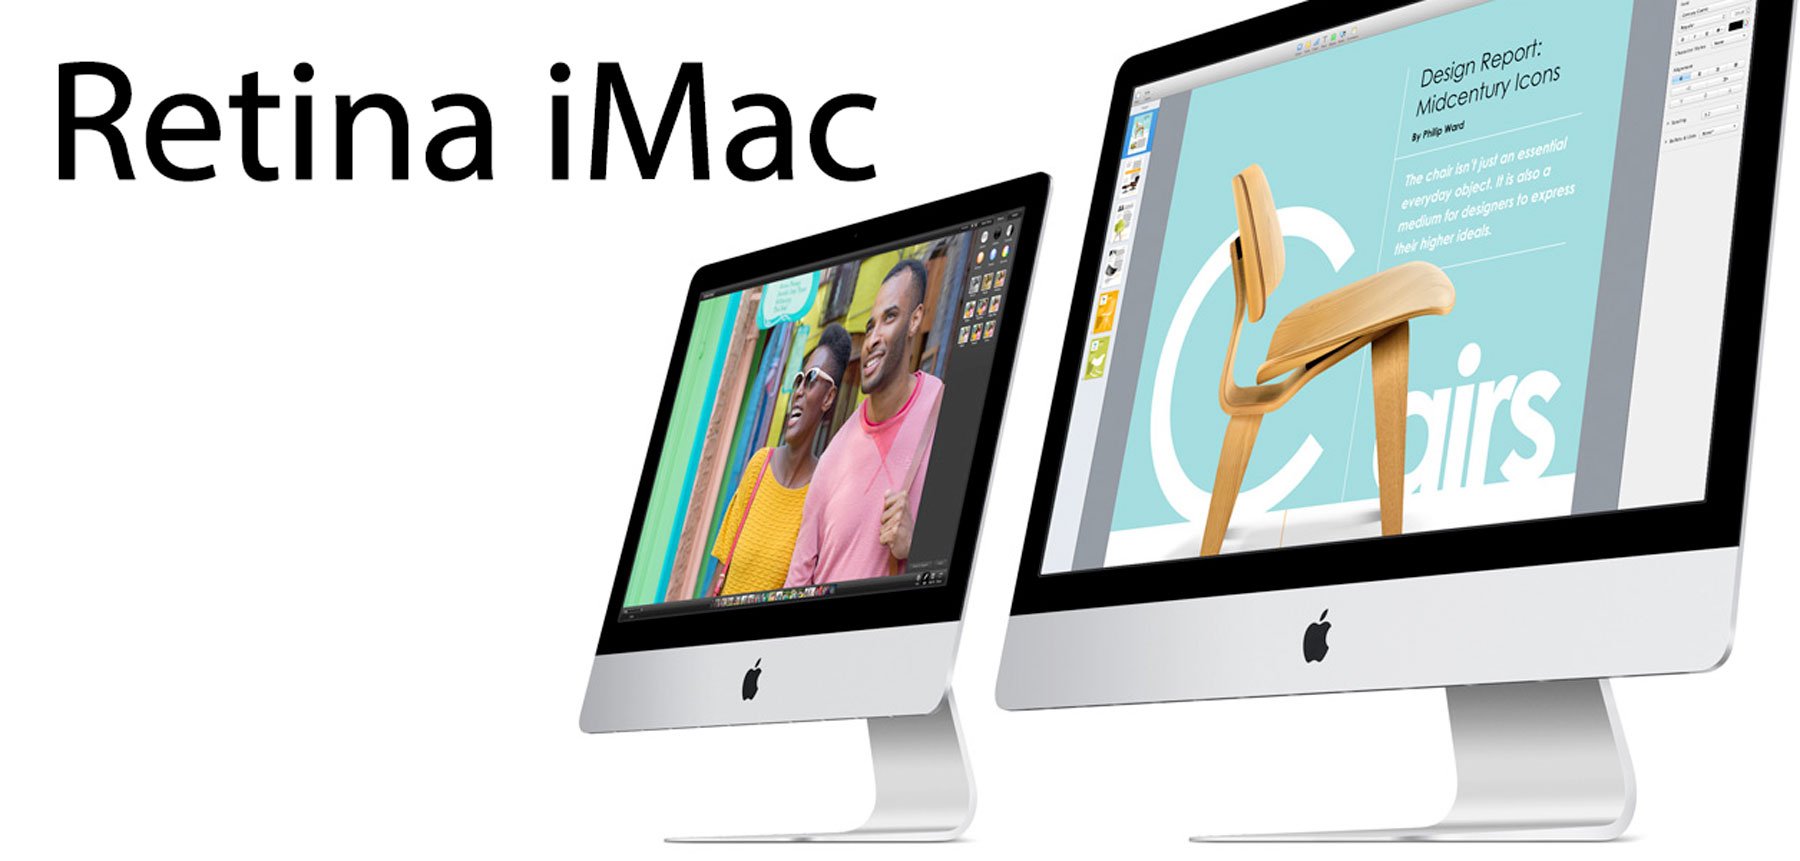 Retina iMac kommt, Retina MacBook Air später 6